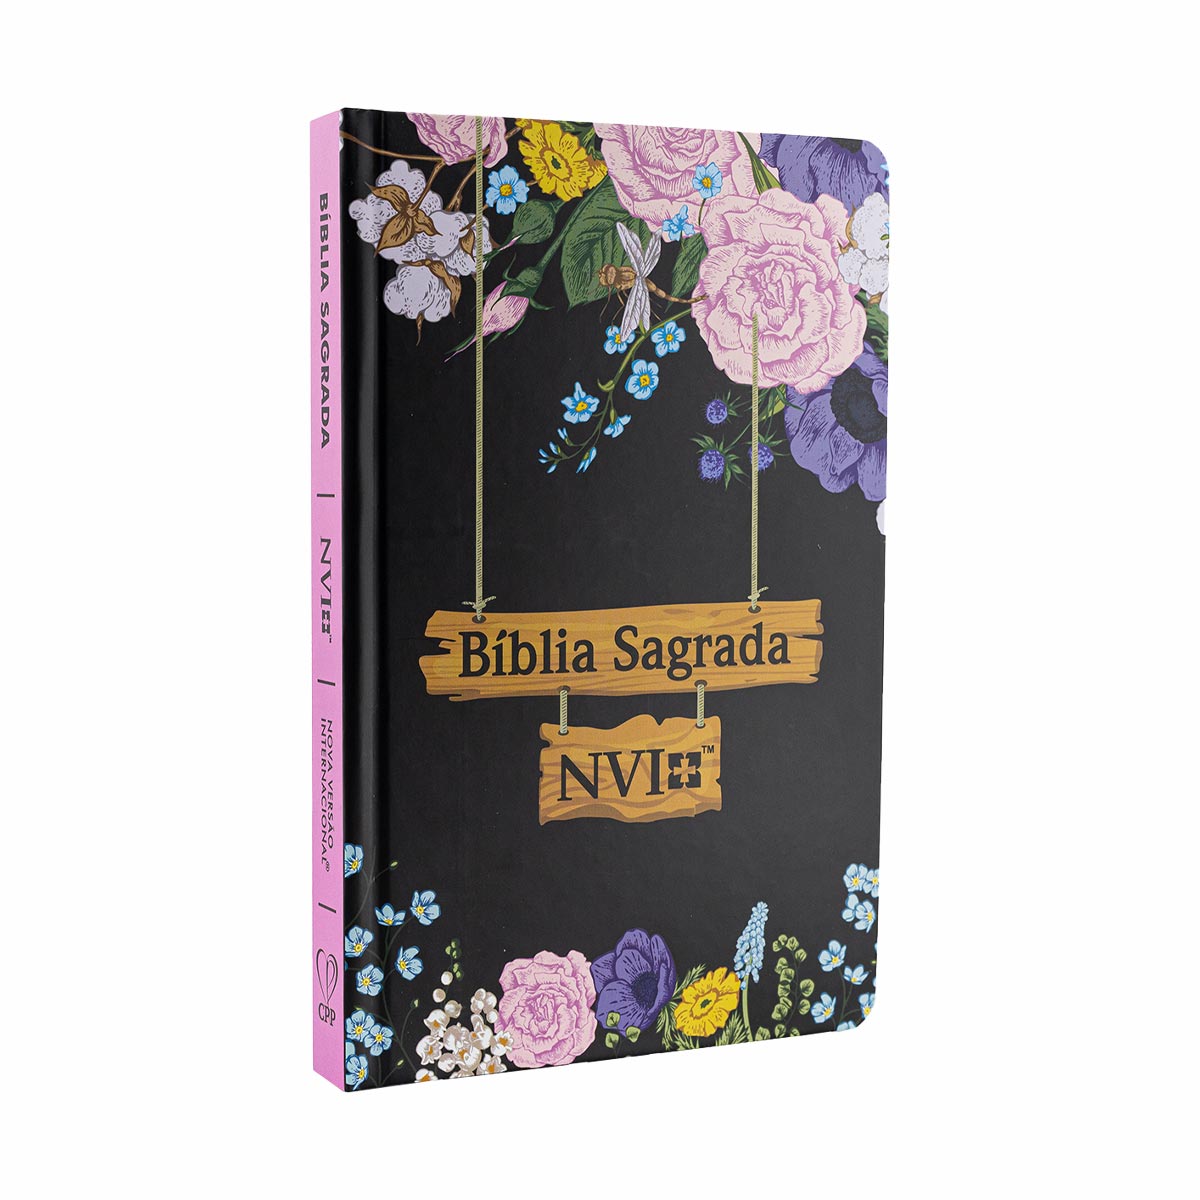 Bíblia Sagrada Slim - NVI -  Capa Dura Jardim Preta